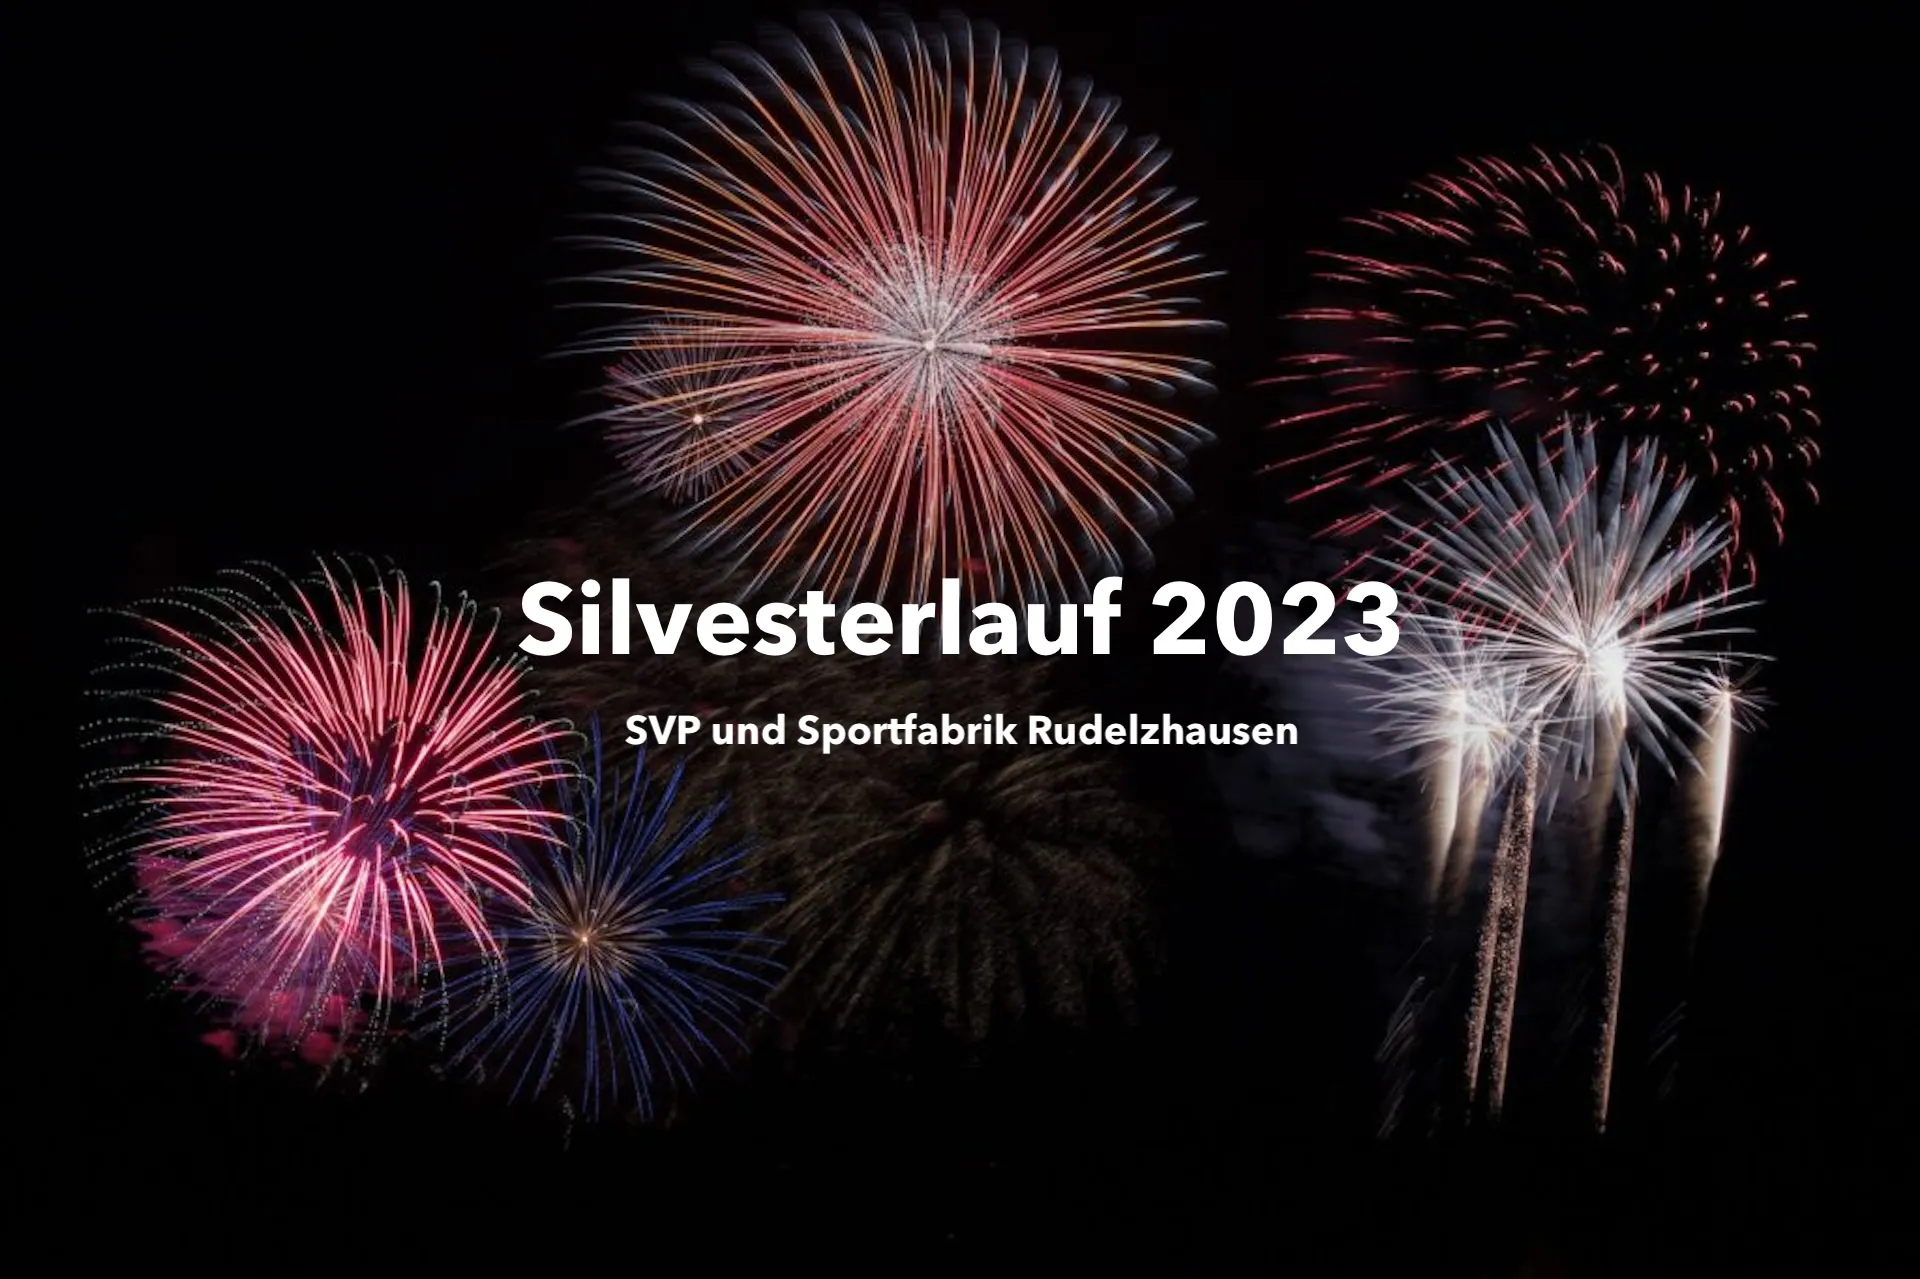 SVP und Sportfabrik Rudelzhausen veranstalten Silvesterlauf 2023